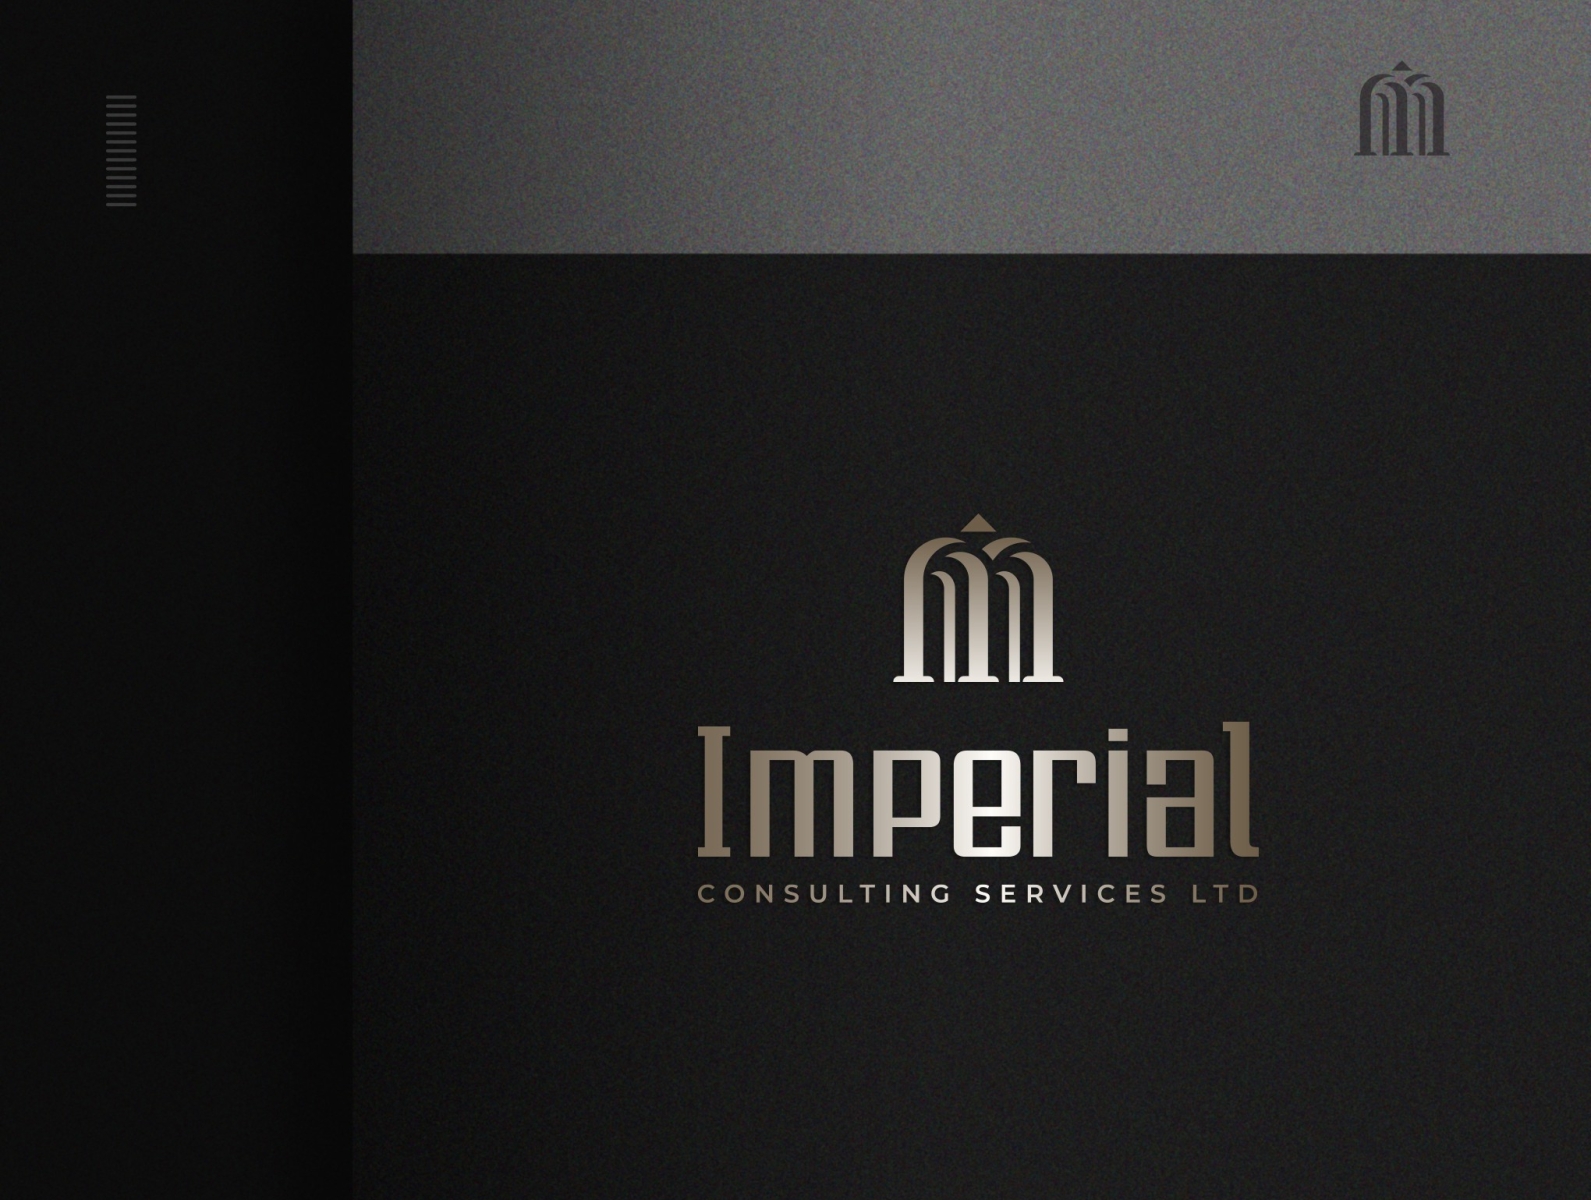 Imperial imperial imperial logo logo logodesign logos